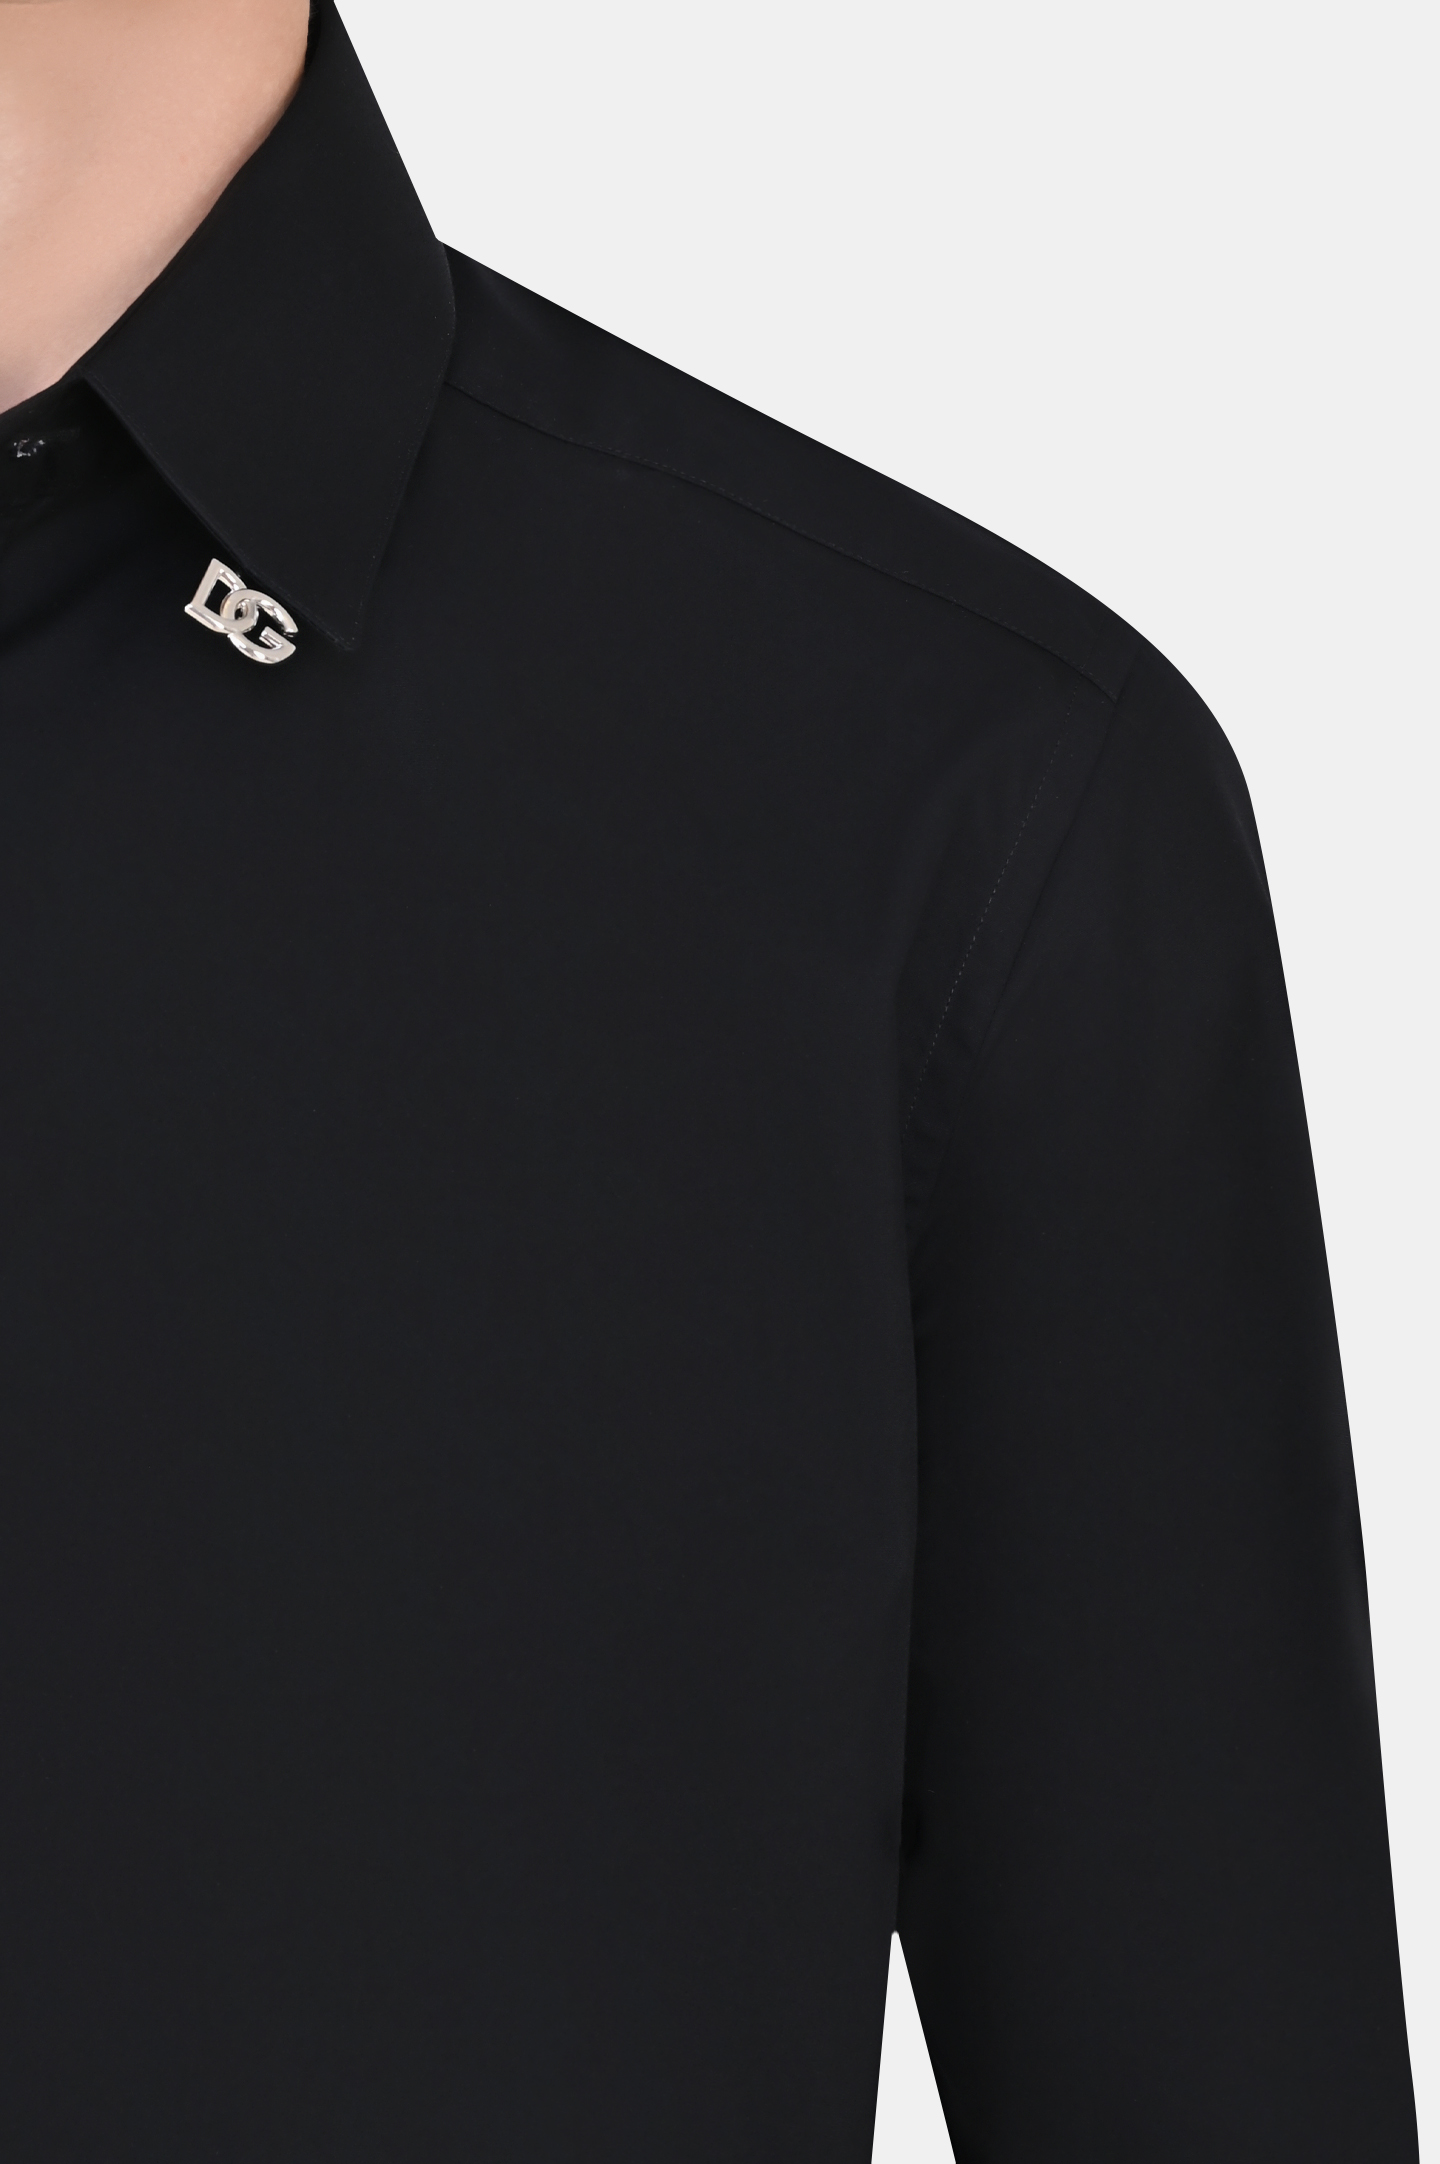 Рубашка DOLCE & GABBANA G5EJ0T GF114, цвет: Черный, Мужской